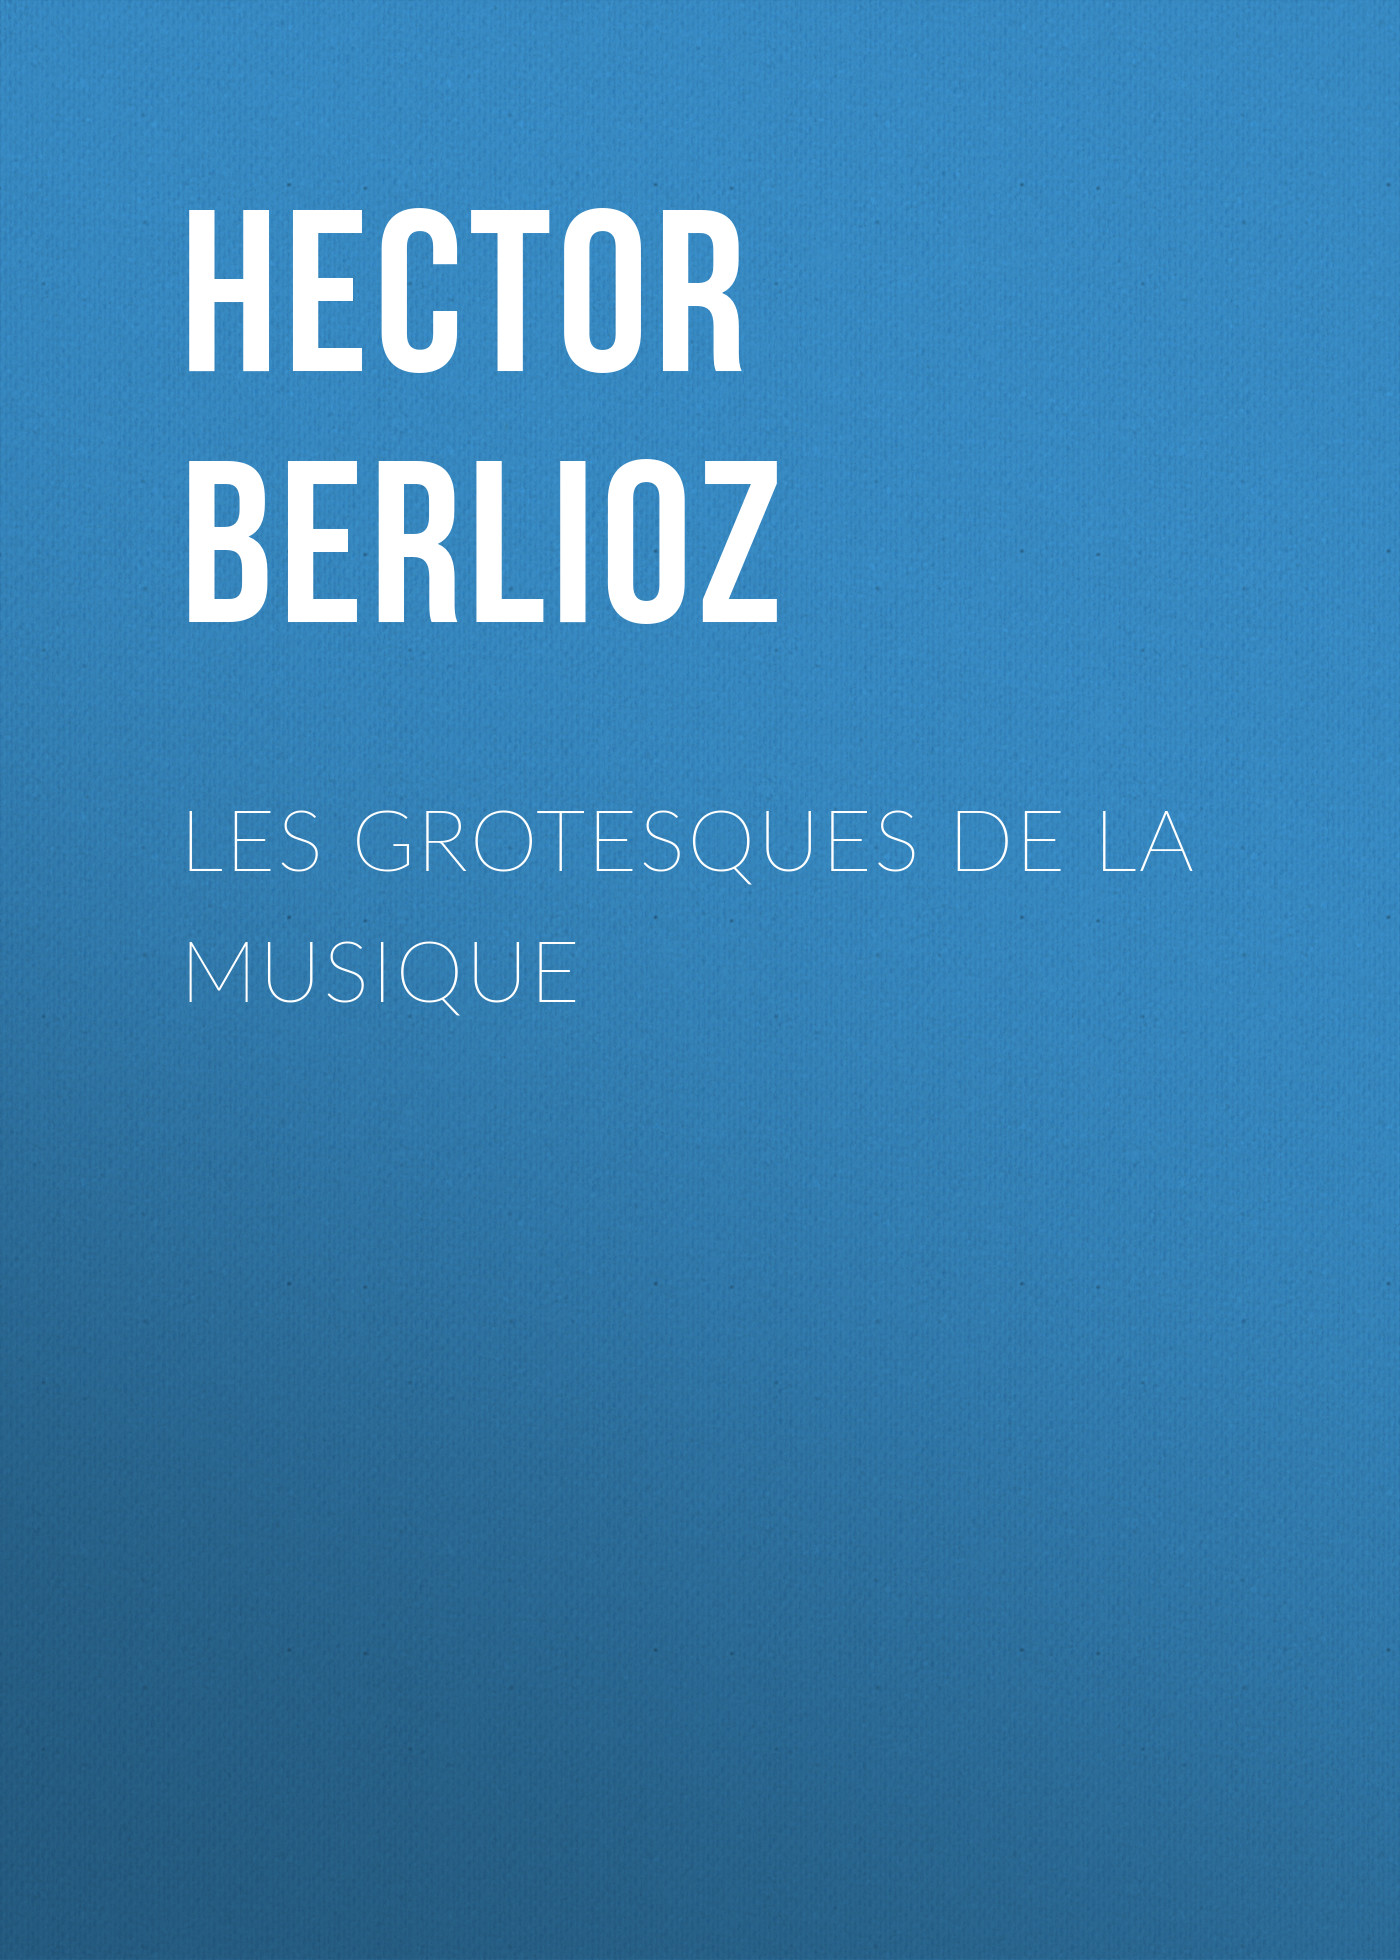 Книга Les grotesques de la musique из серии , созданная Hector Berlioz, может относится к жанру Зарубежная старинная литература, Зарубежная классика. Стоимость электронной книги Les grotesques de la musique с идентификатором 24178172 составляет 0.90 руб.